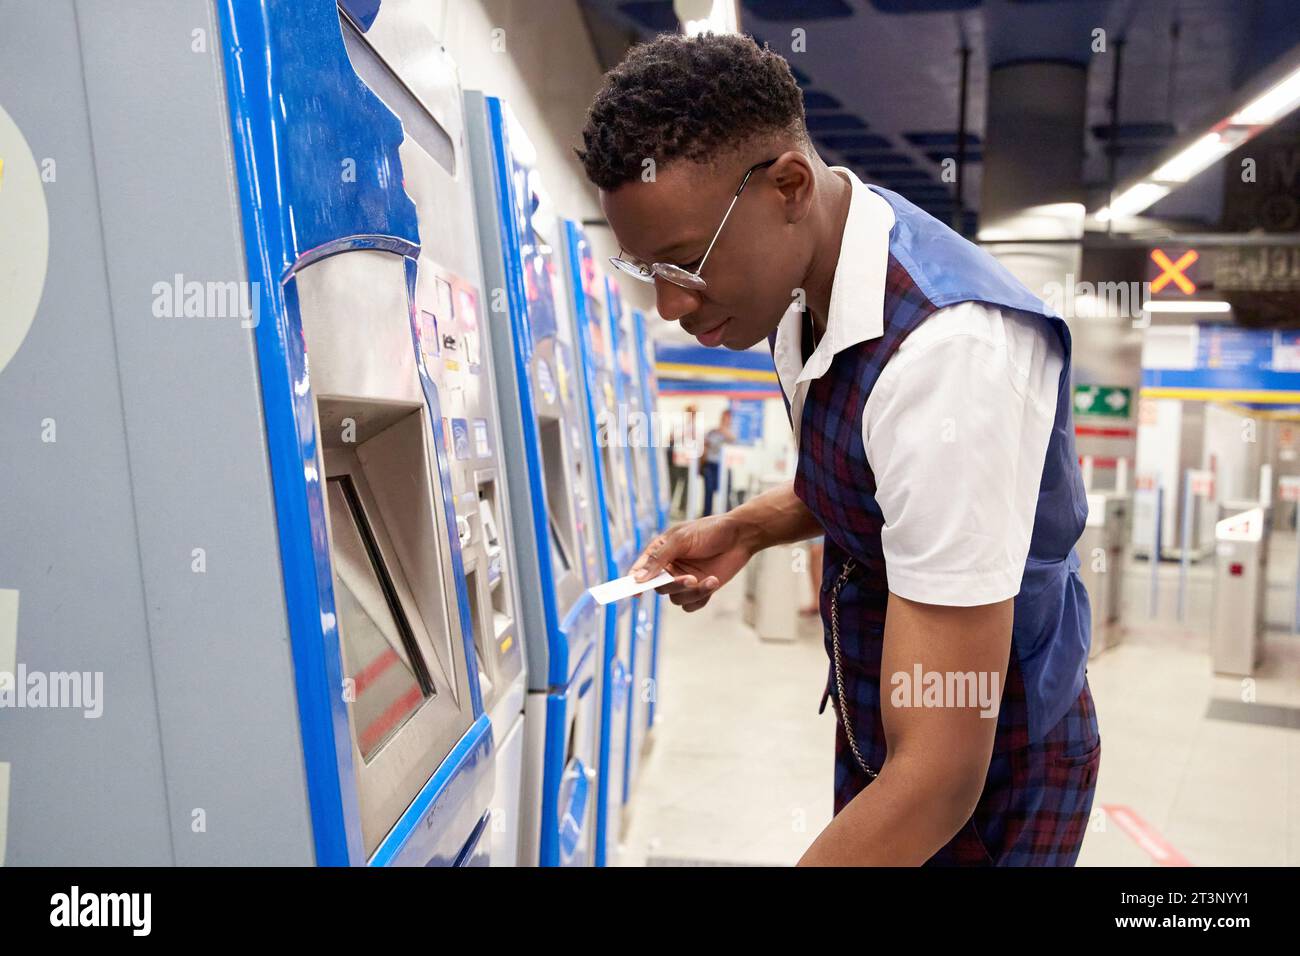 homme afro-américain élégant utilisant le terminal pour acheter un billet sur le métro Banque D'Images